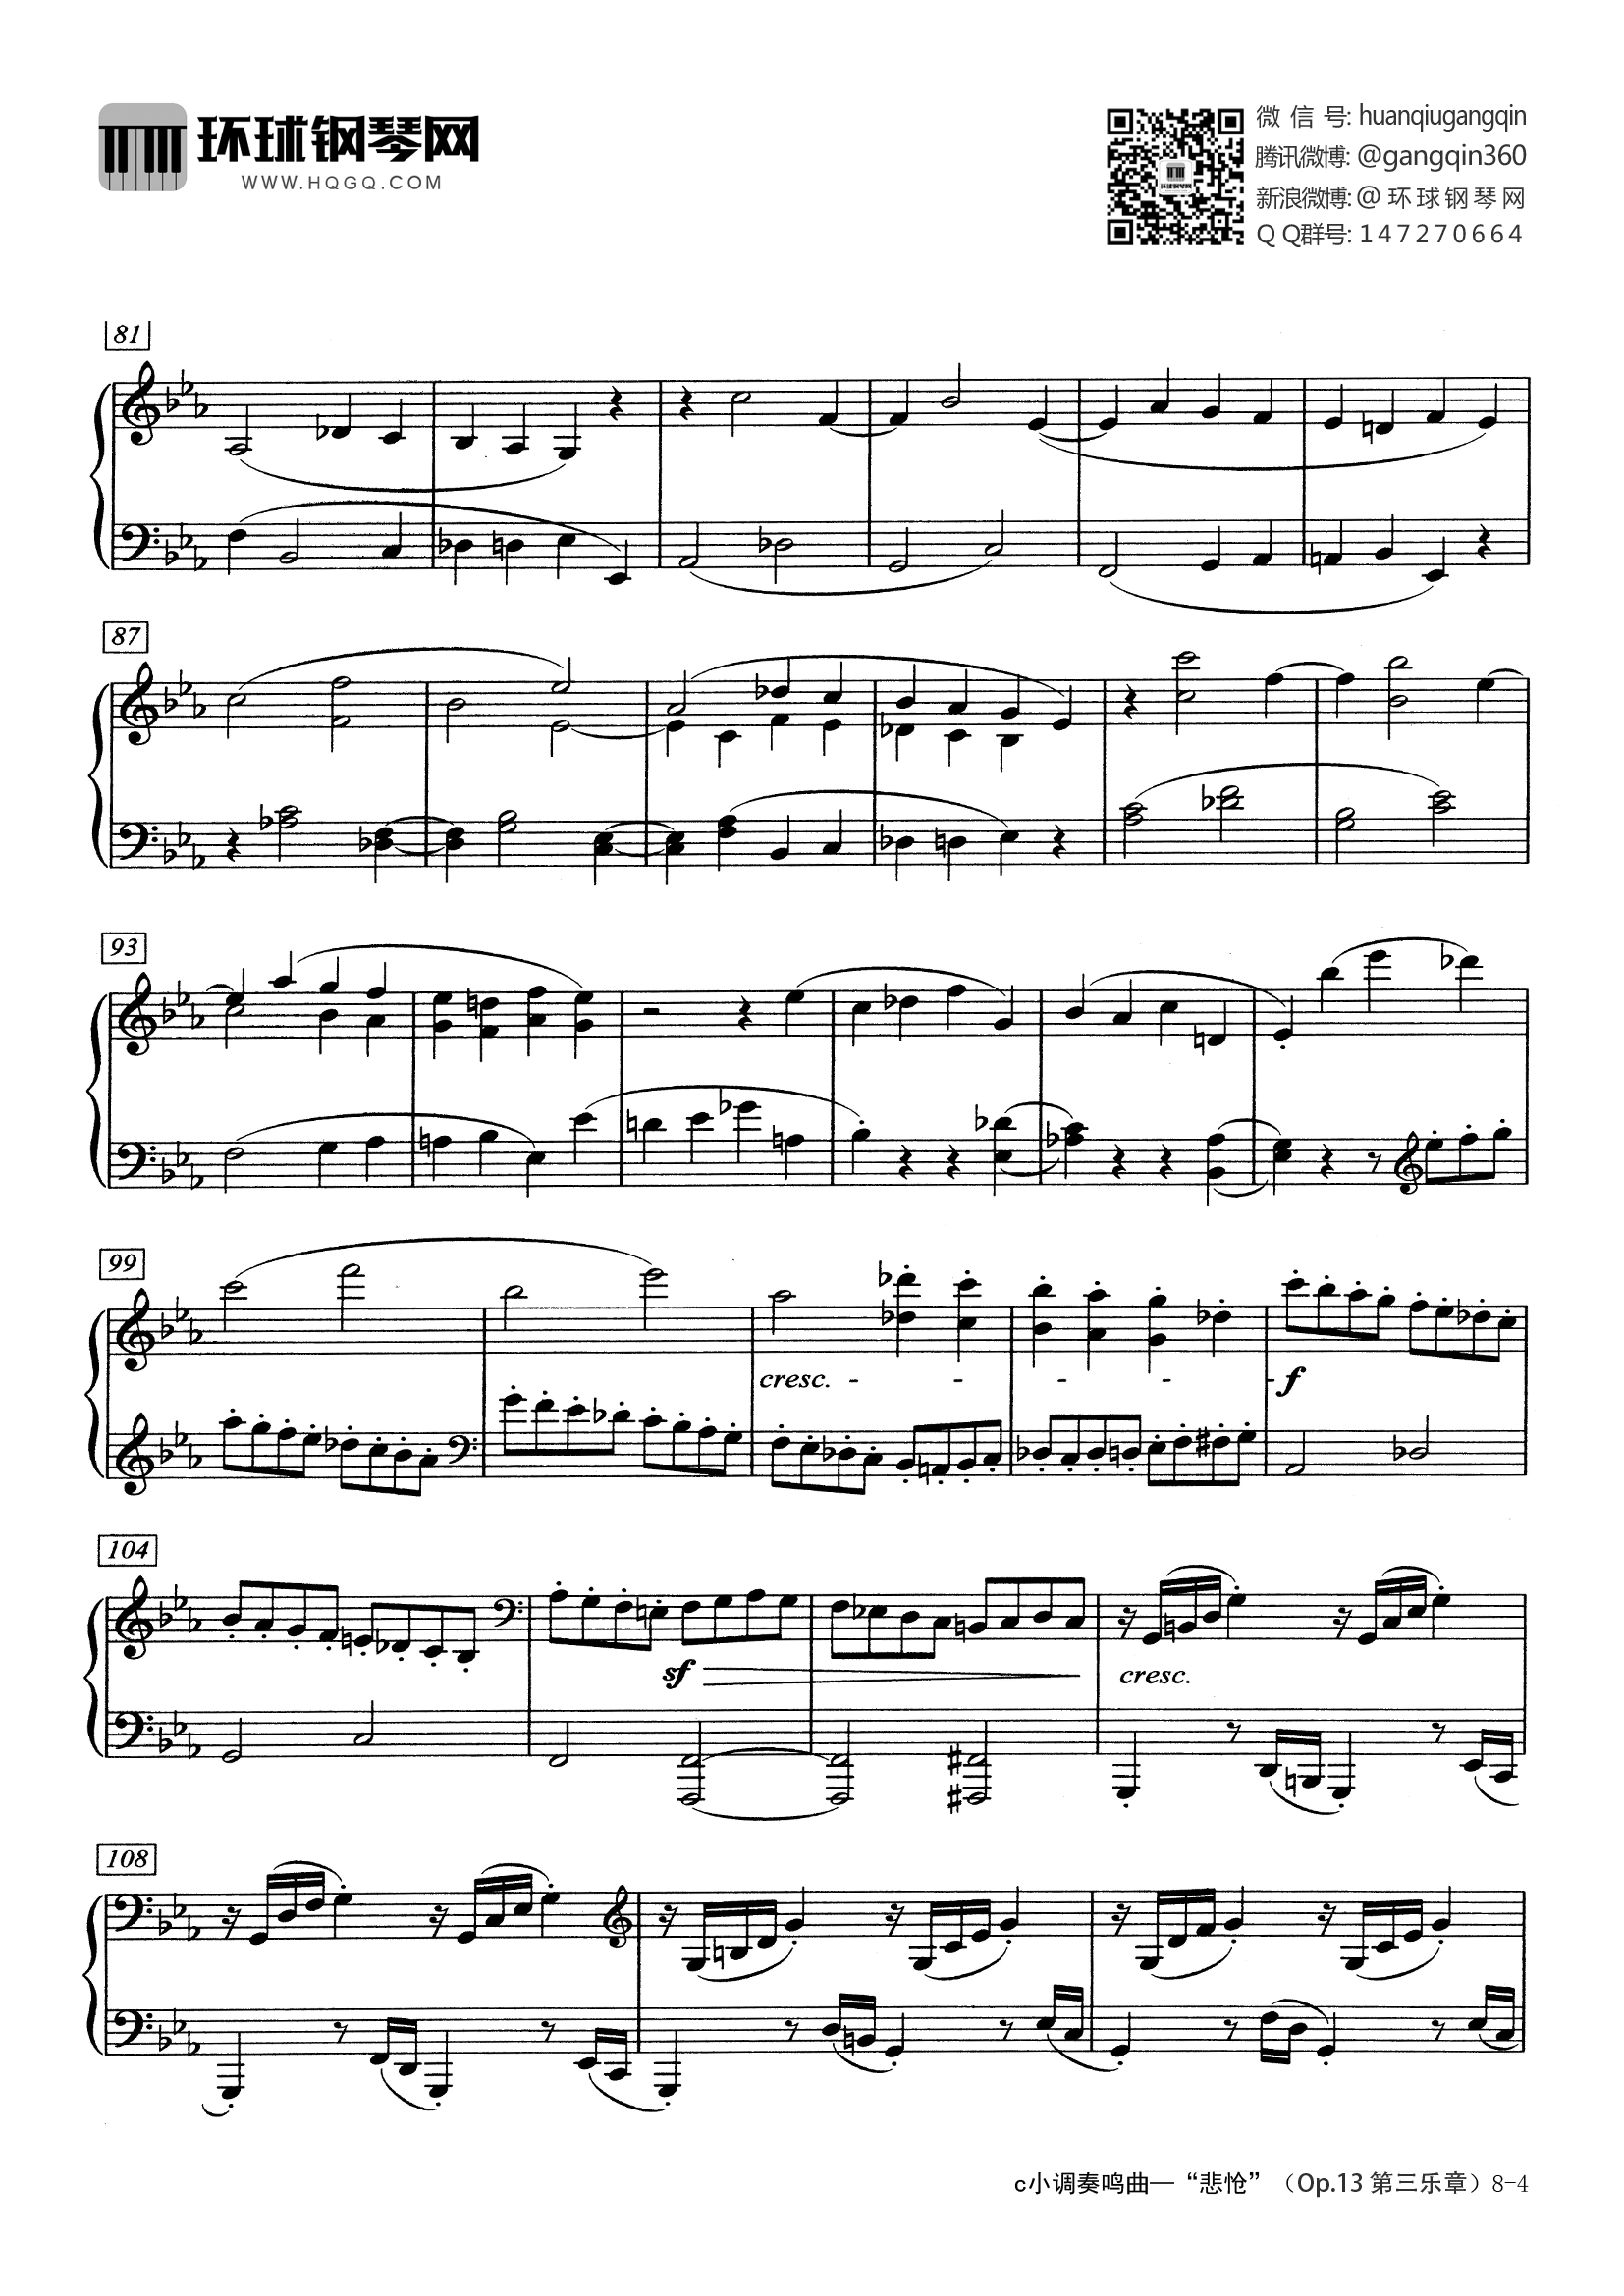 悲怆第三章钢琴谱-乐动达人-贝多芬-beethoven-琴艺谱